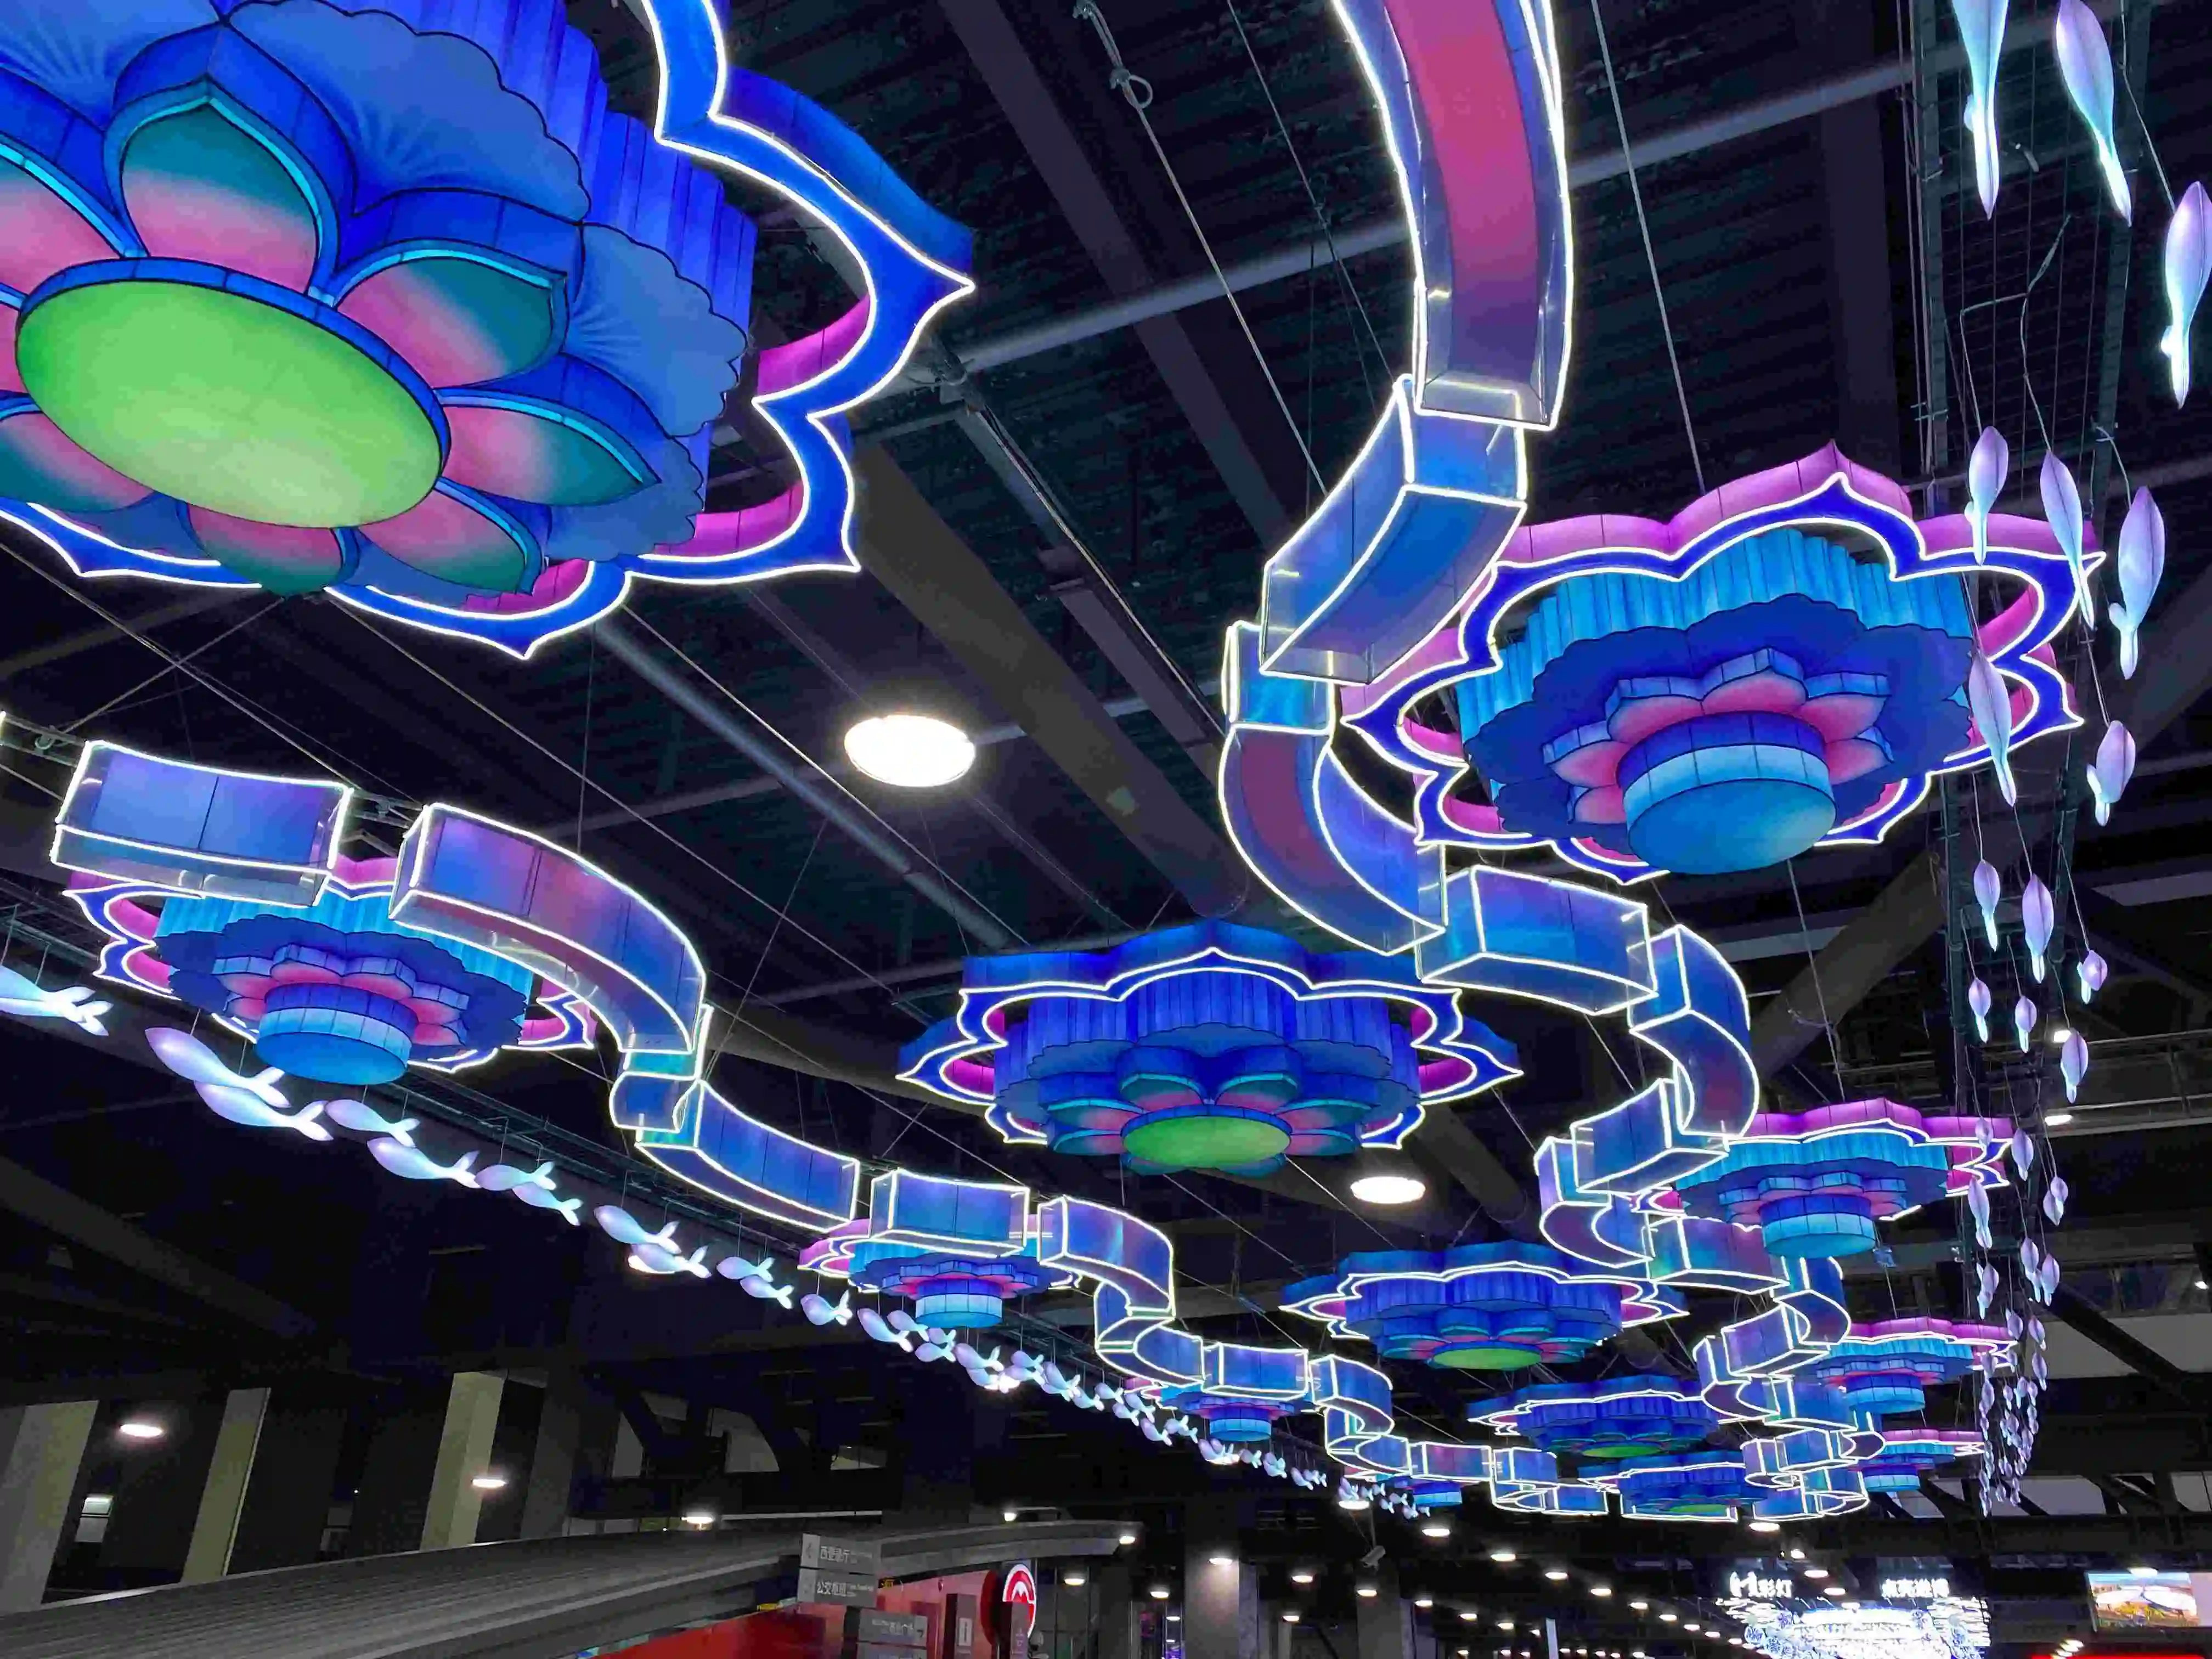 عرض فانوش كبير للاحتفال الصيني في الهواء الطلق لتزيين رأس السنة مع أضواء LED للبيع